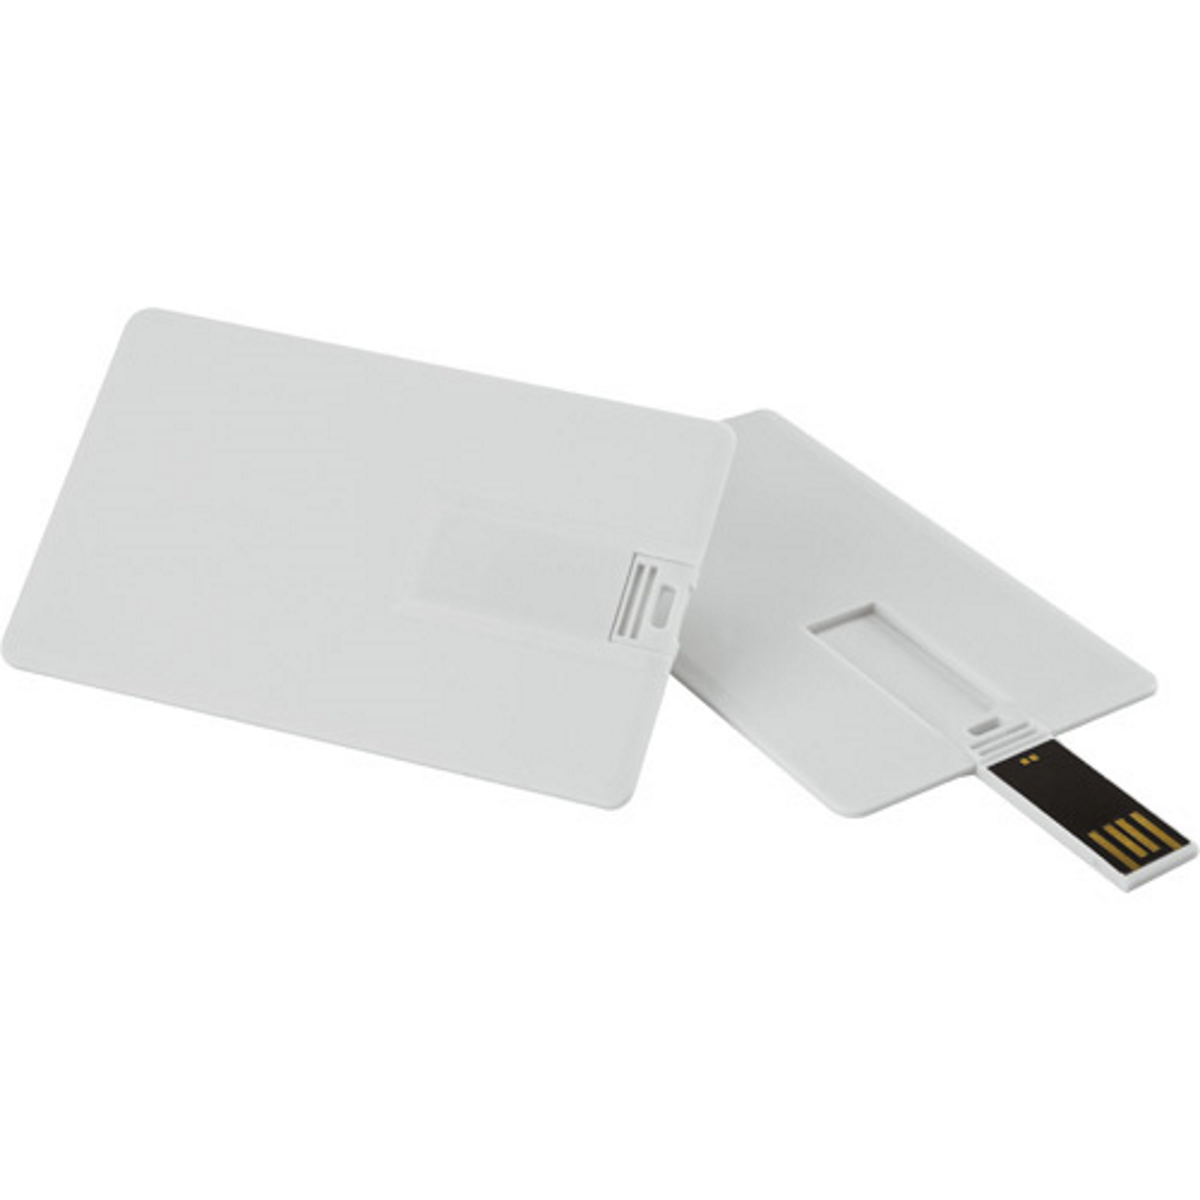 16 Kreditkarte ® USB GB) (Weiss, GERMANY USB-Stick